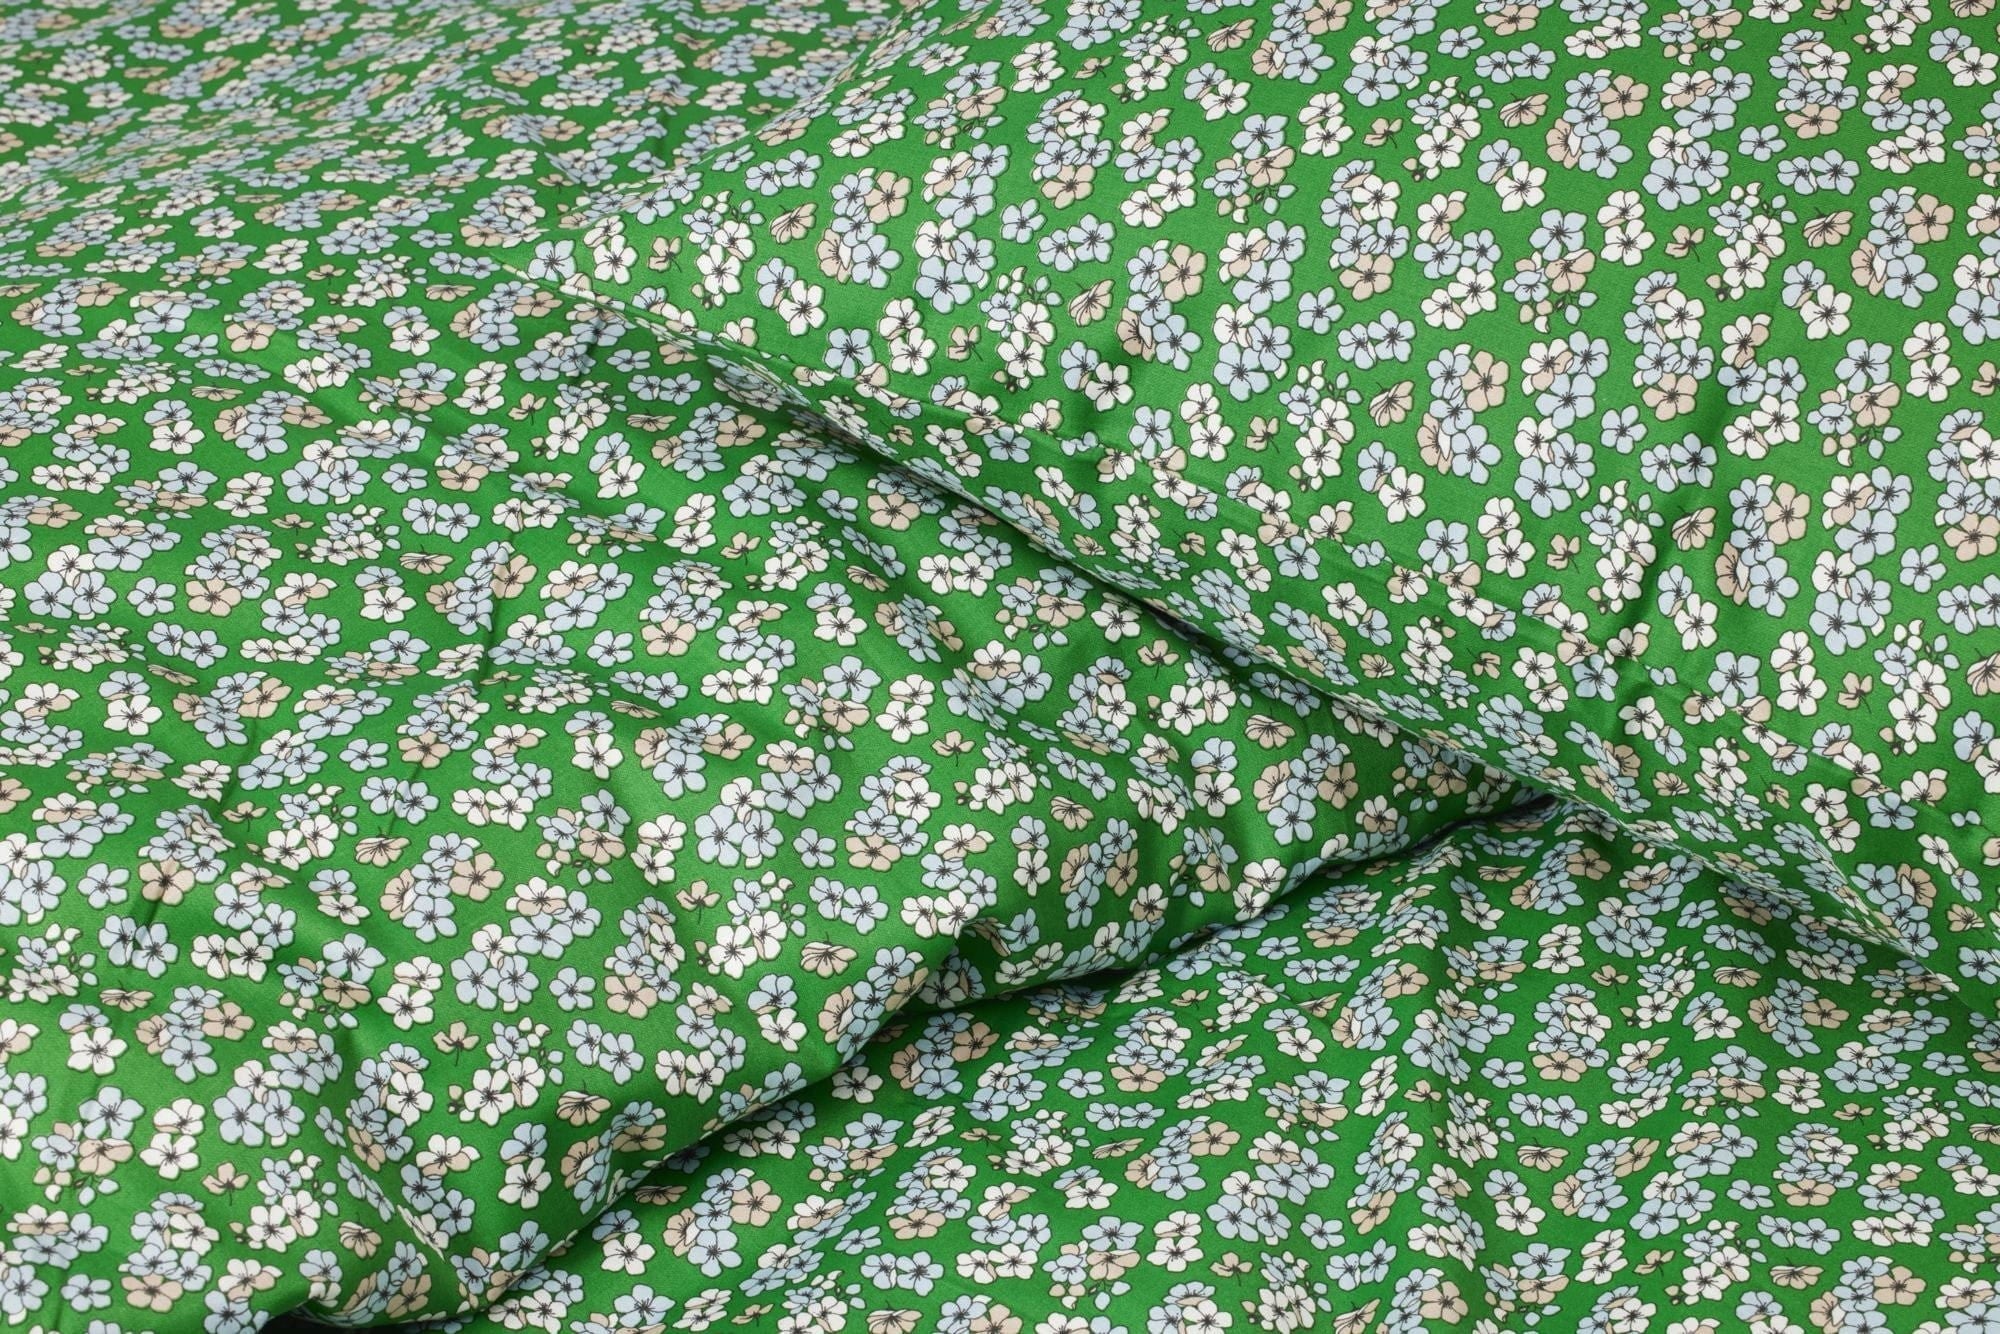 Juna Aangenaam bed linnen 140x220 cm, groen